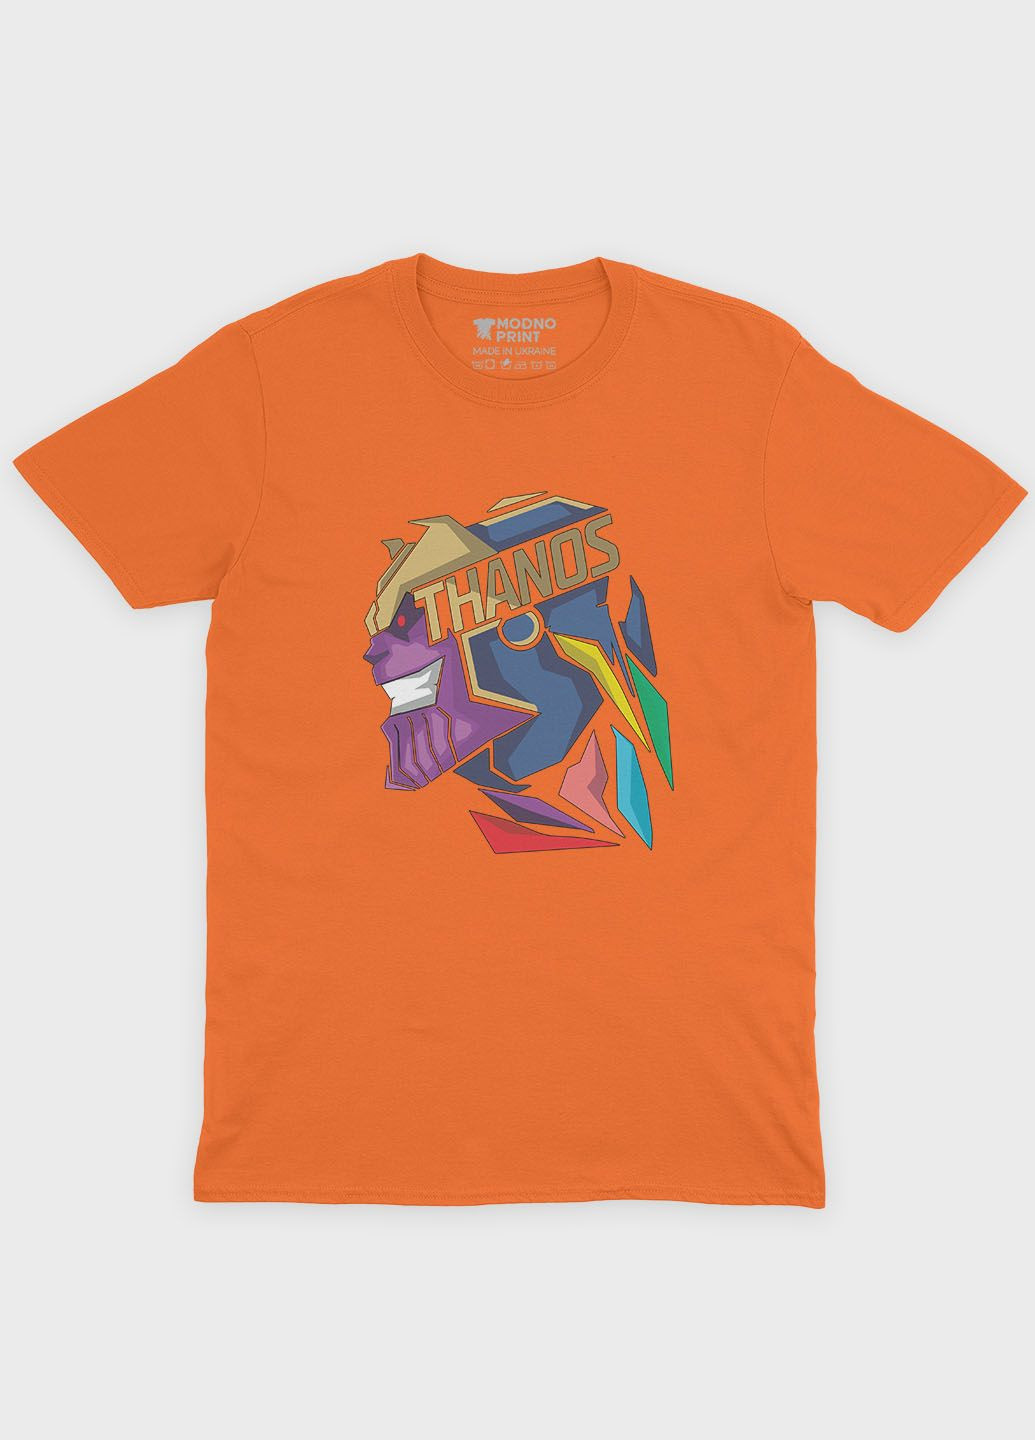 Оранжевая демисезонная футболка для девочки с принтом супезлоды - танос (ts001-1-ora-006-019-002-g) Modno